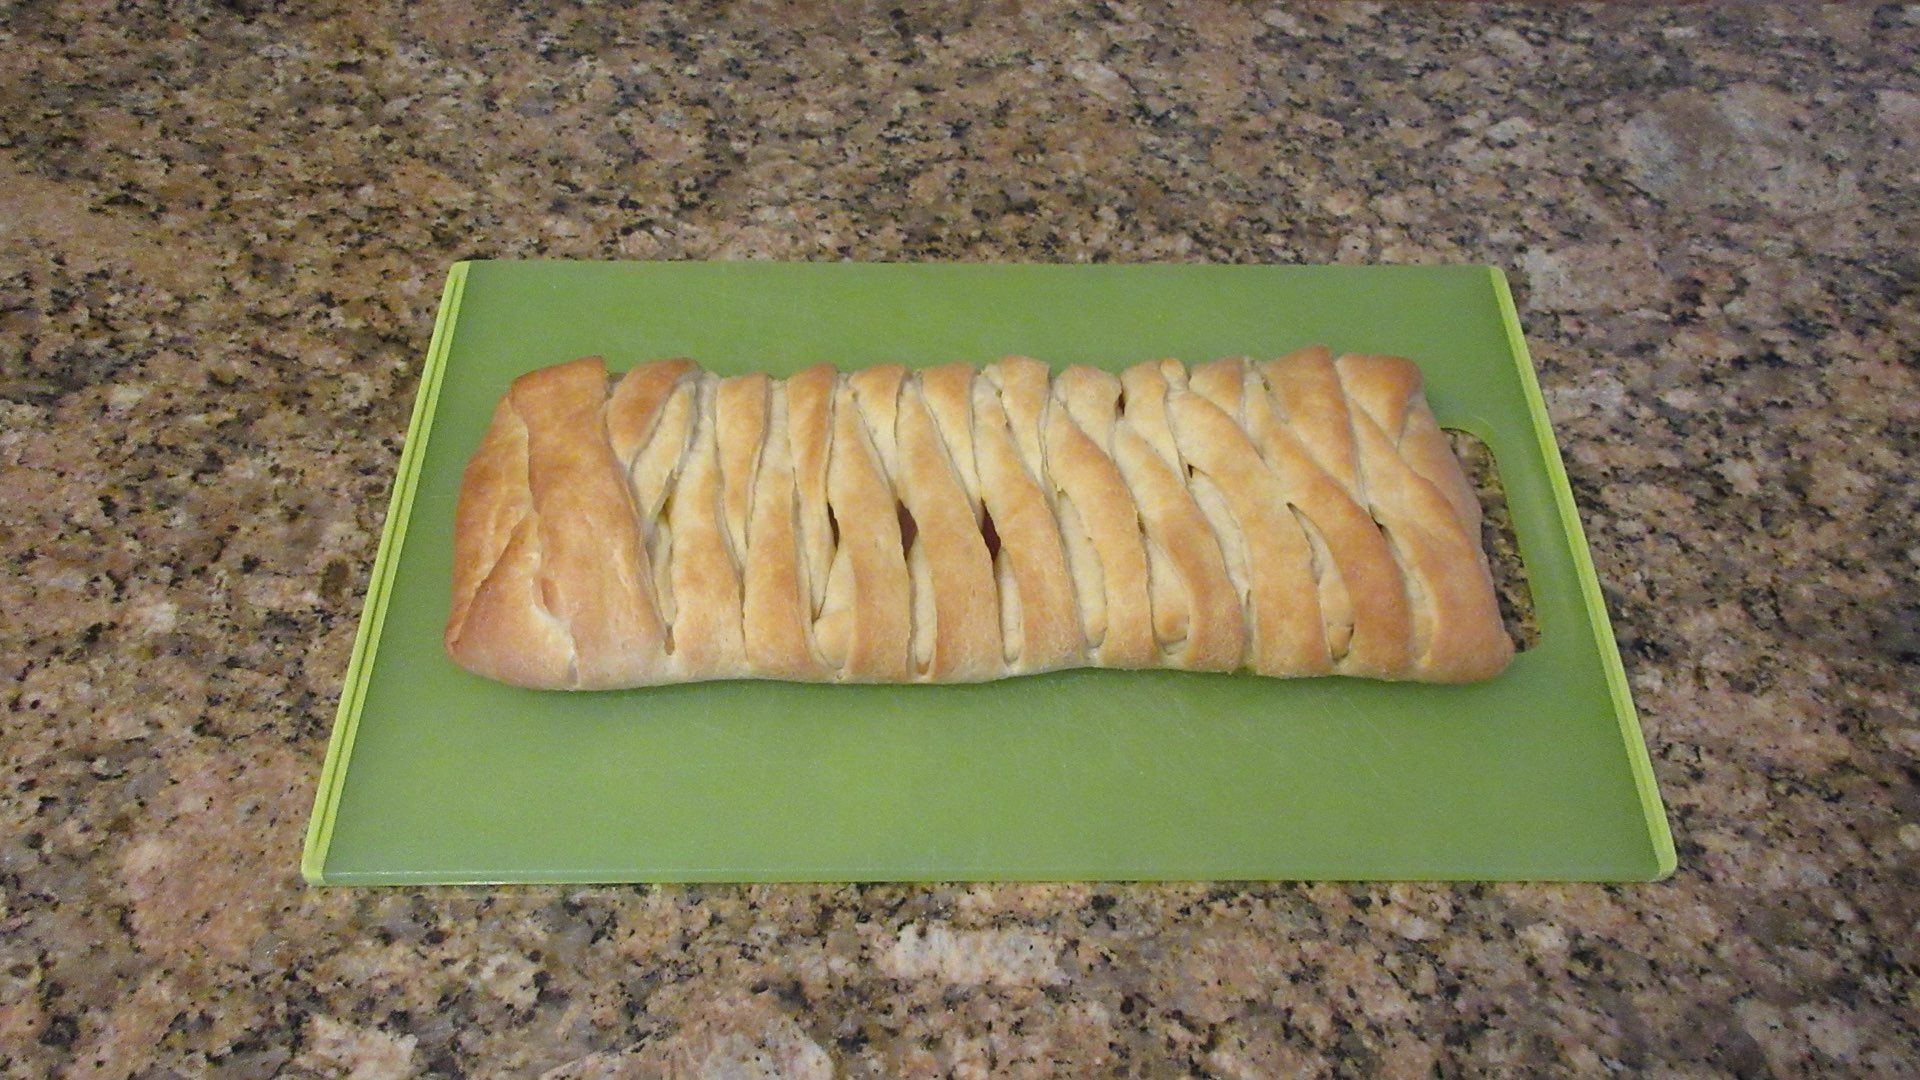 stuffed braided bread